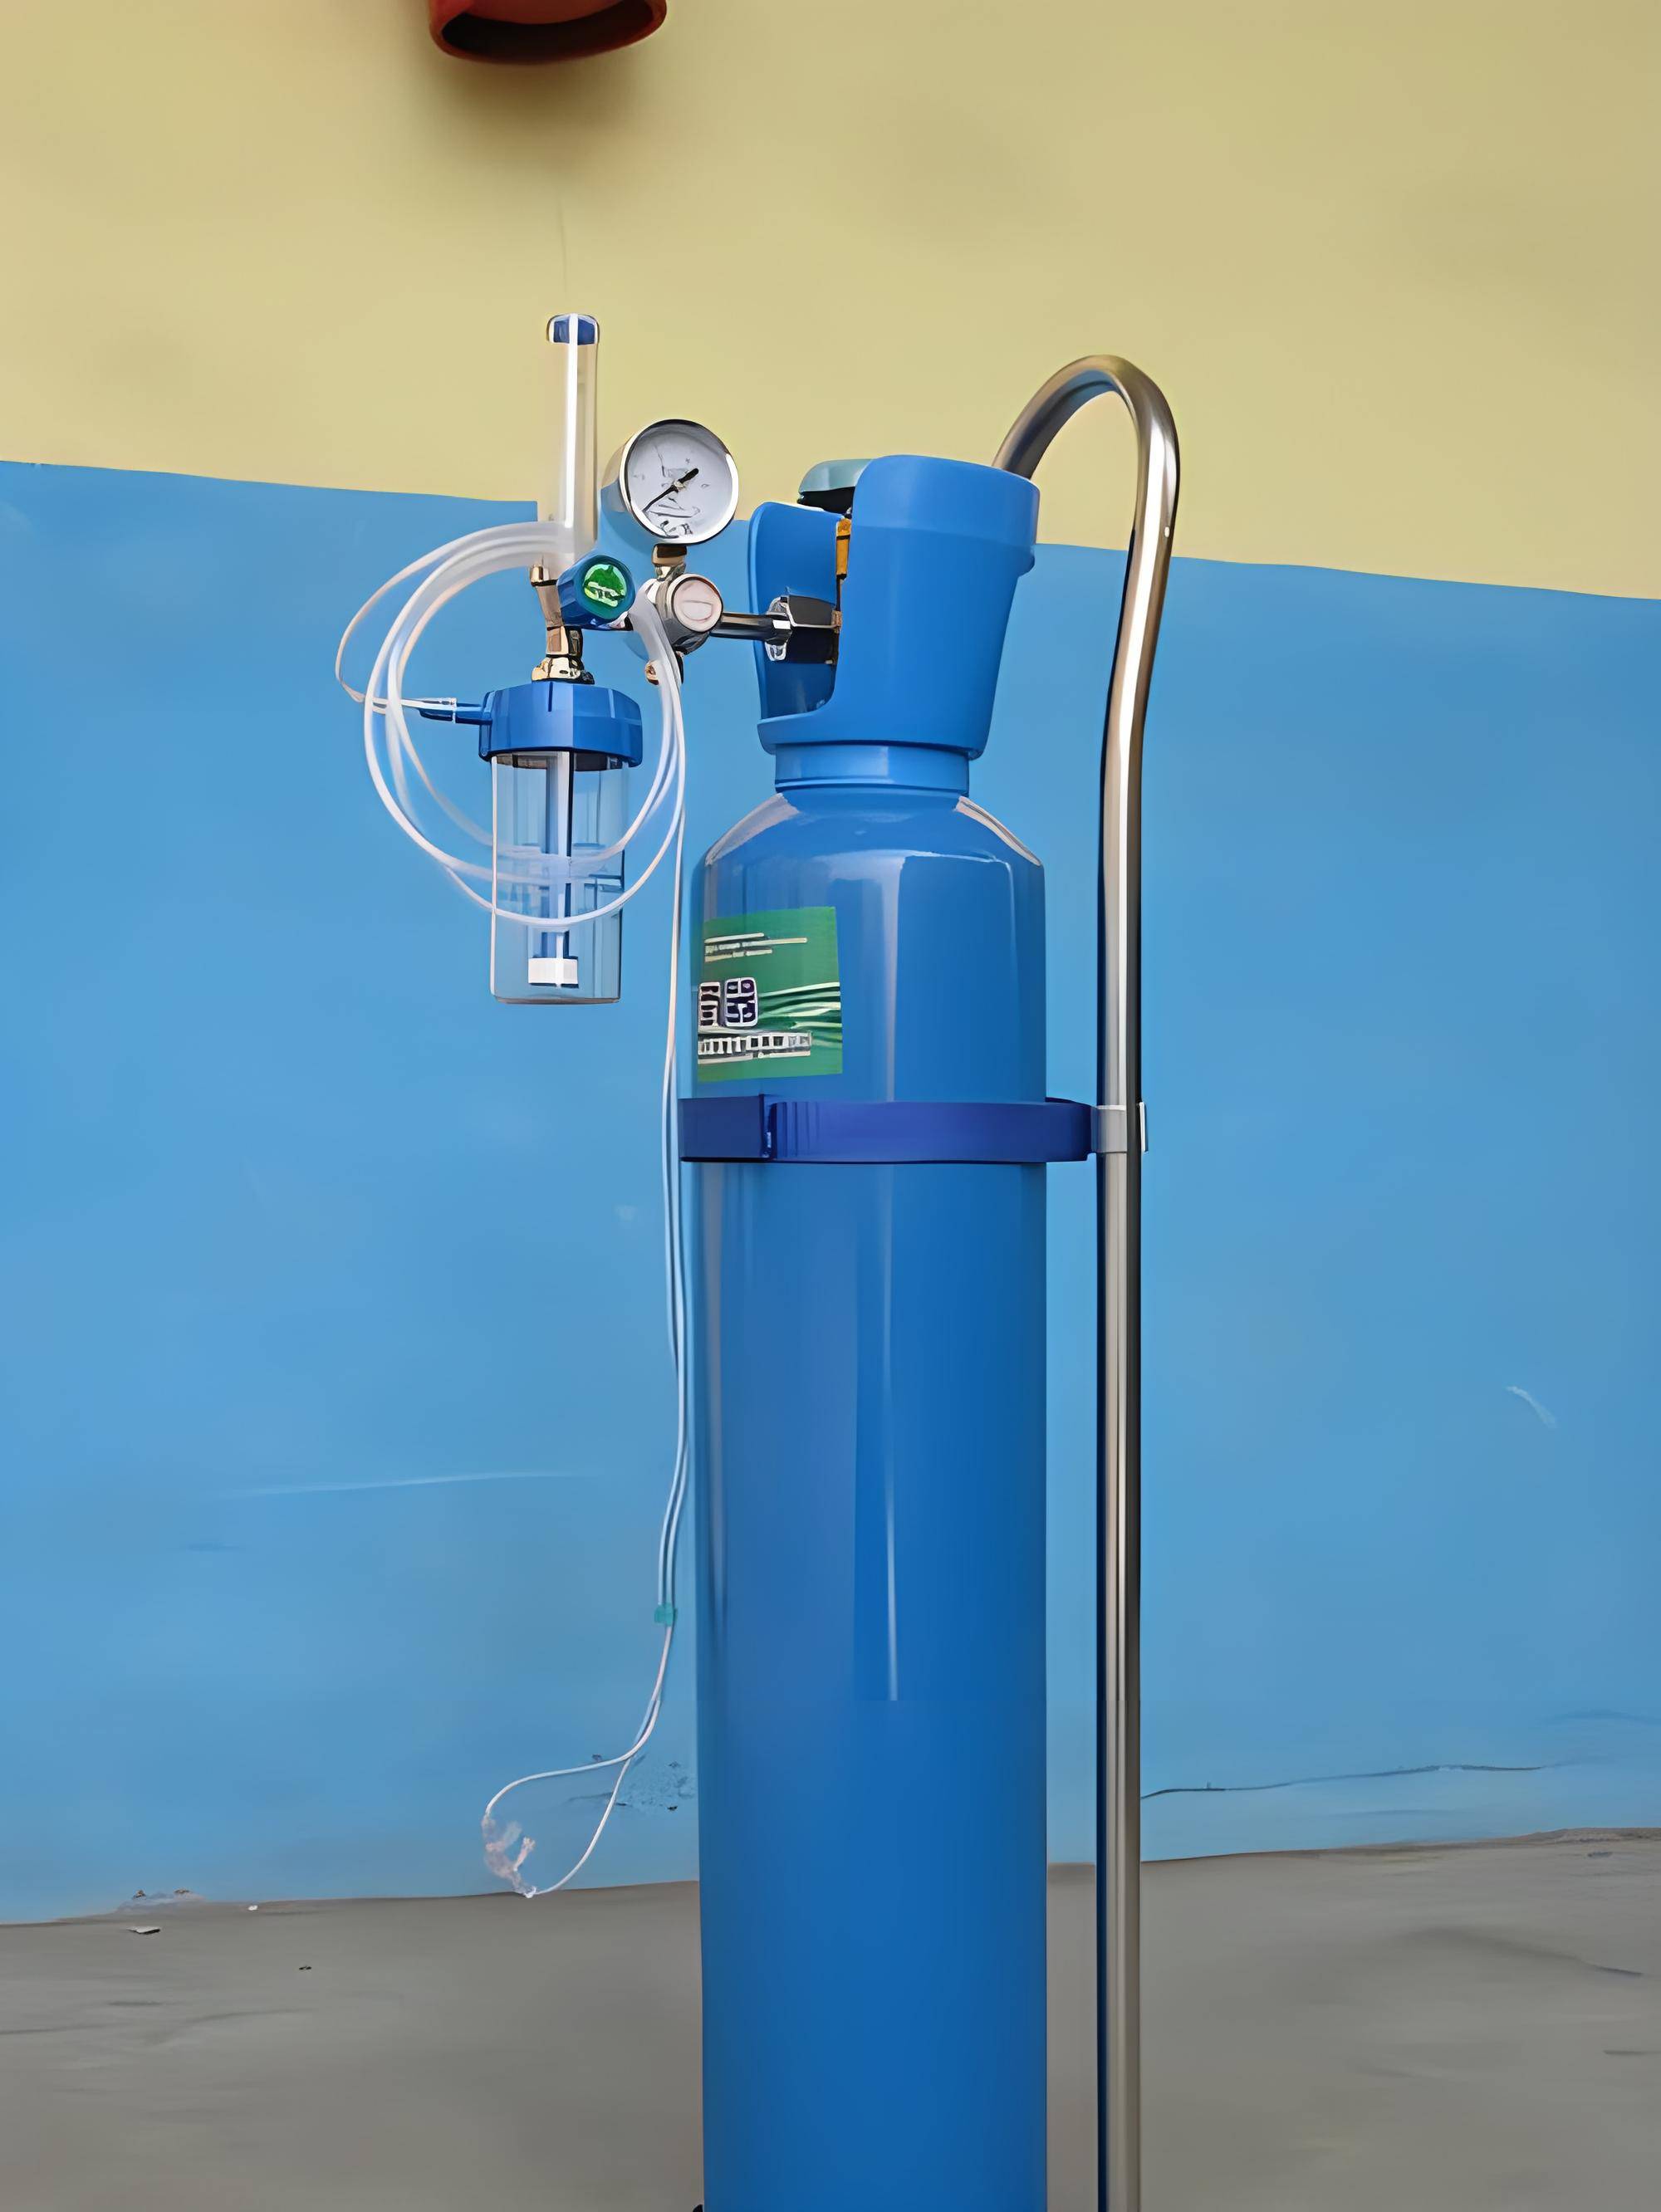 医用氧气瓶是医院,急救站,疗养院等医疗机构常用的设备之一,用于提供